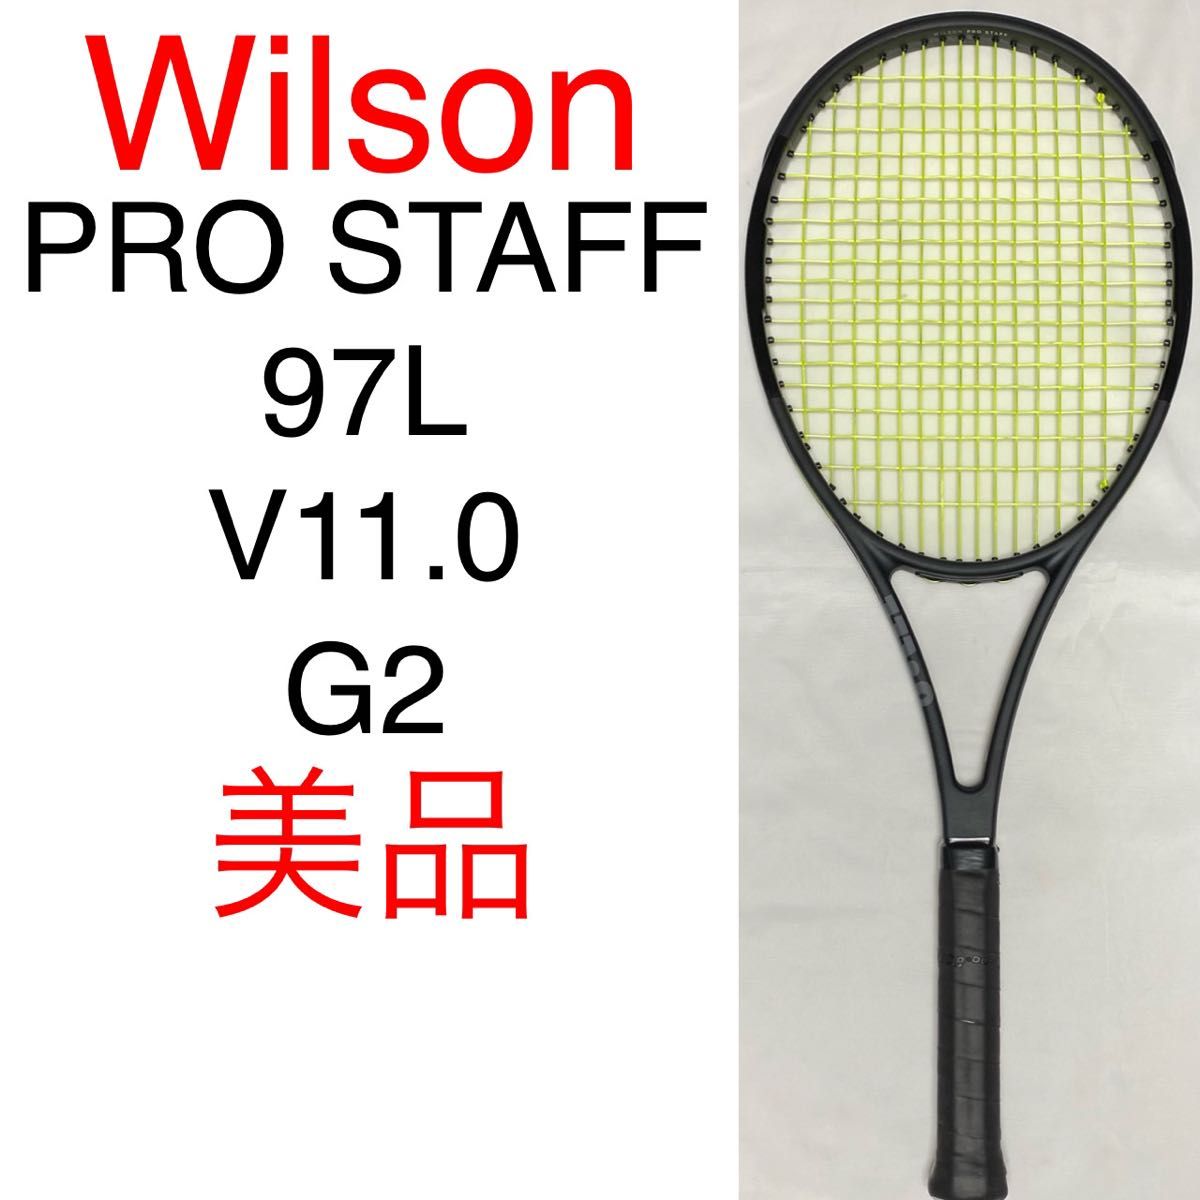 ウィルソン プロスタッフ 97L Wilson PRO STAFF 97L 硬式テニス